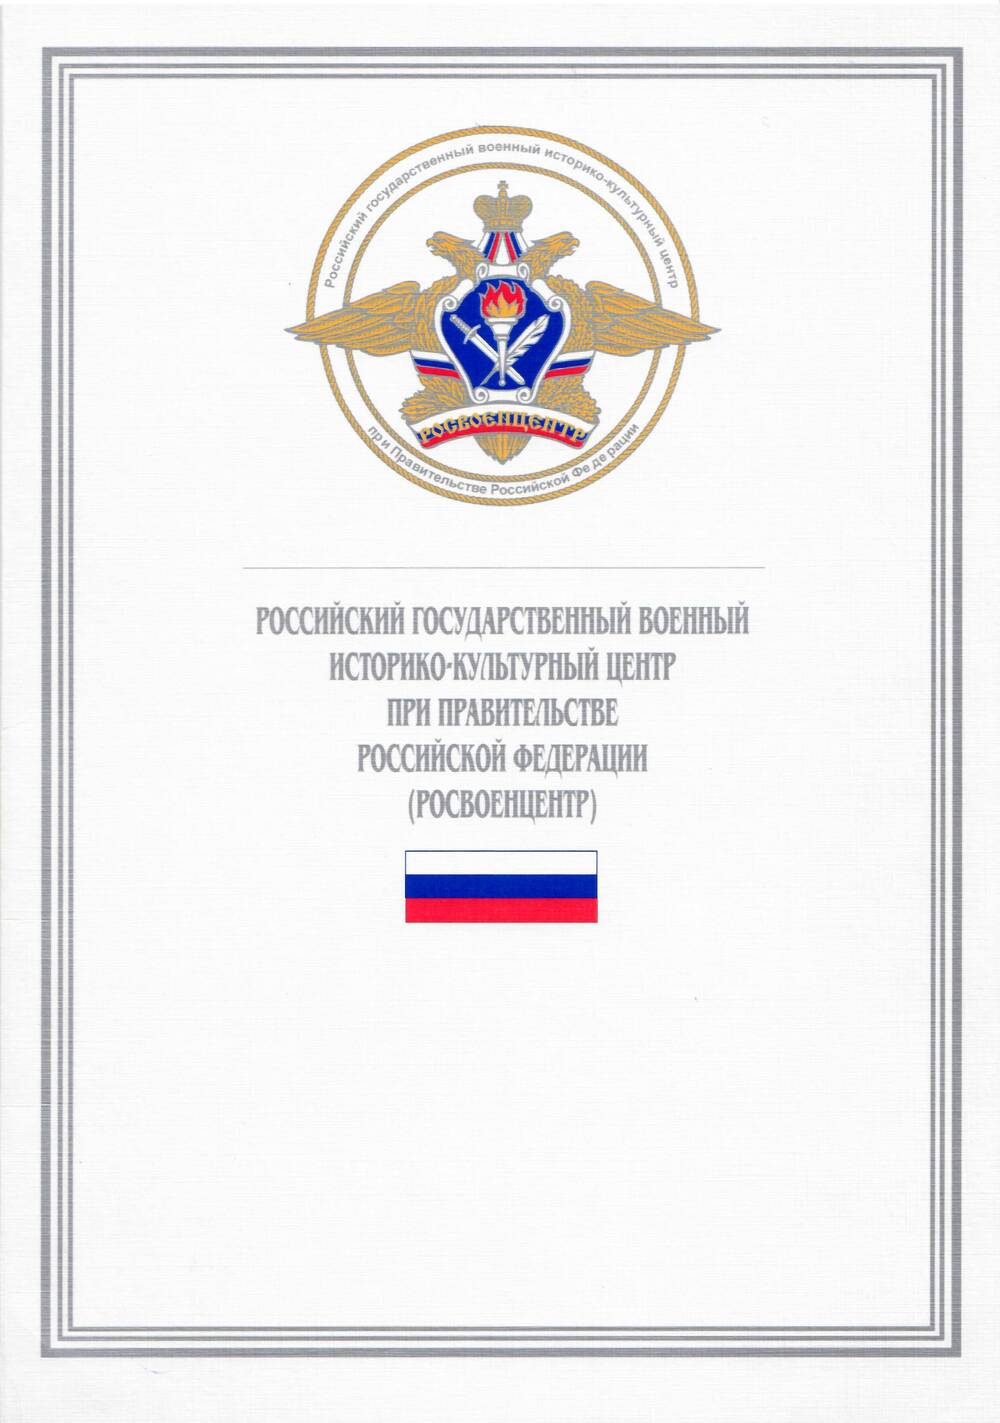 Обложка к Грамоте от Росвоенцентра при Правительстве РФ Народовой Л. А., 16 ноября 1998 г.